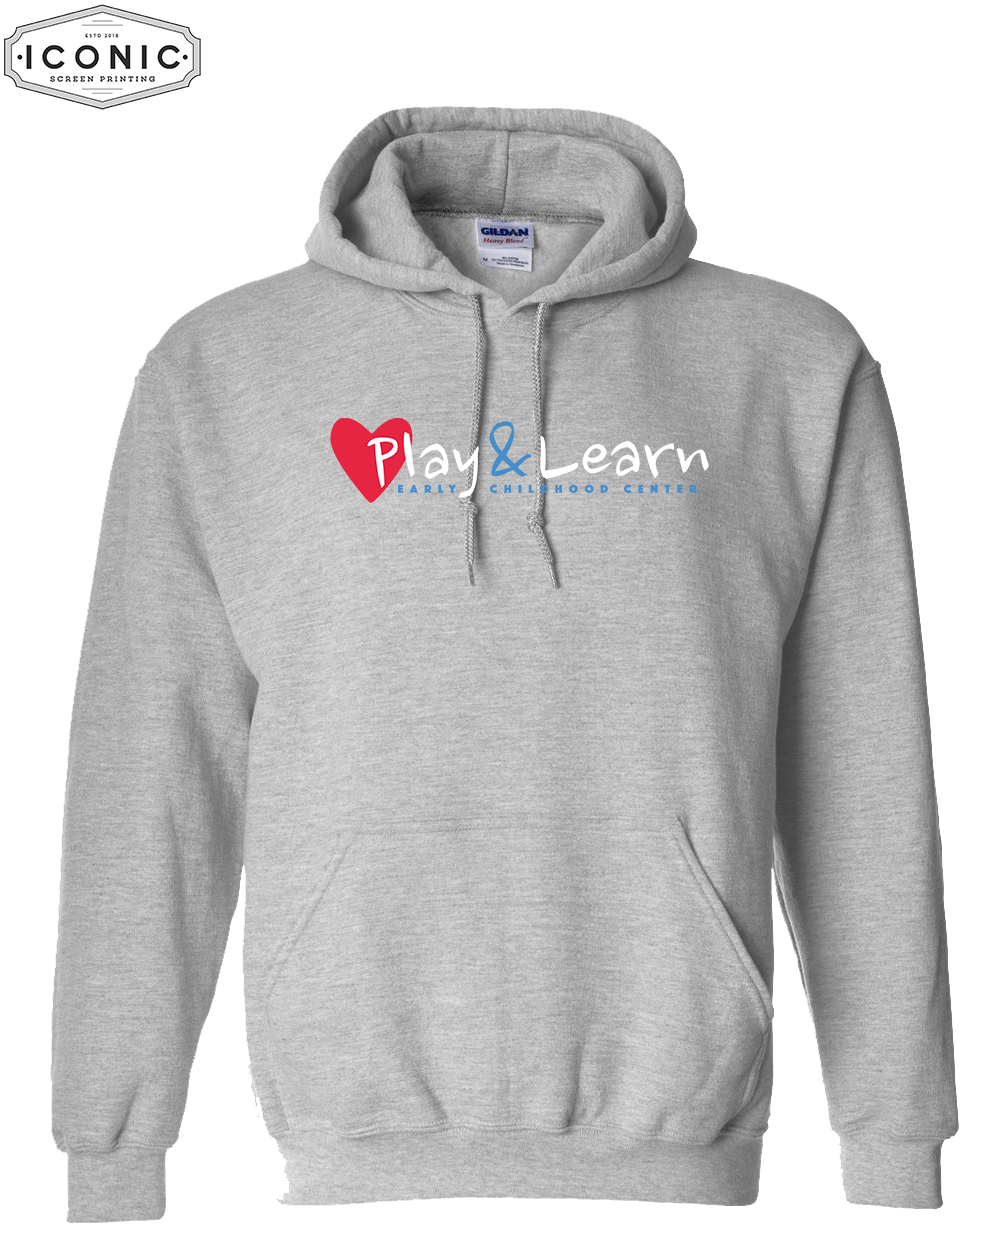 Play & Learn - Heavy Blend Hooded Sweatshirt